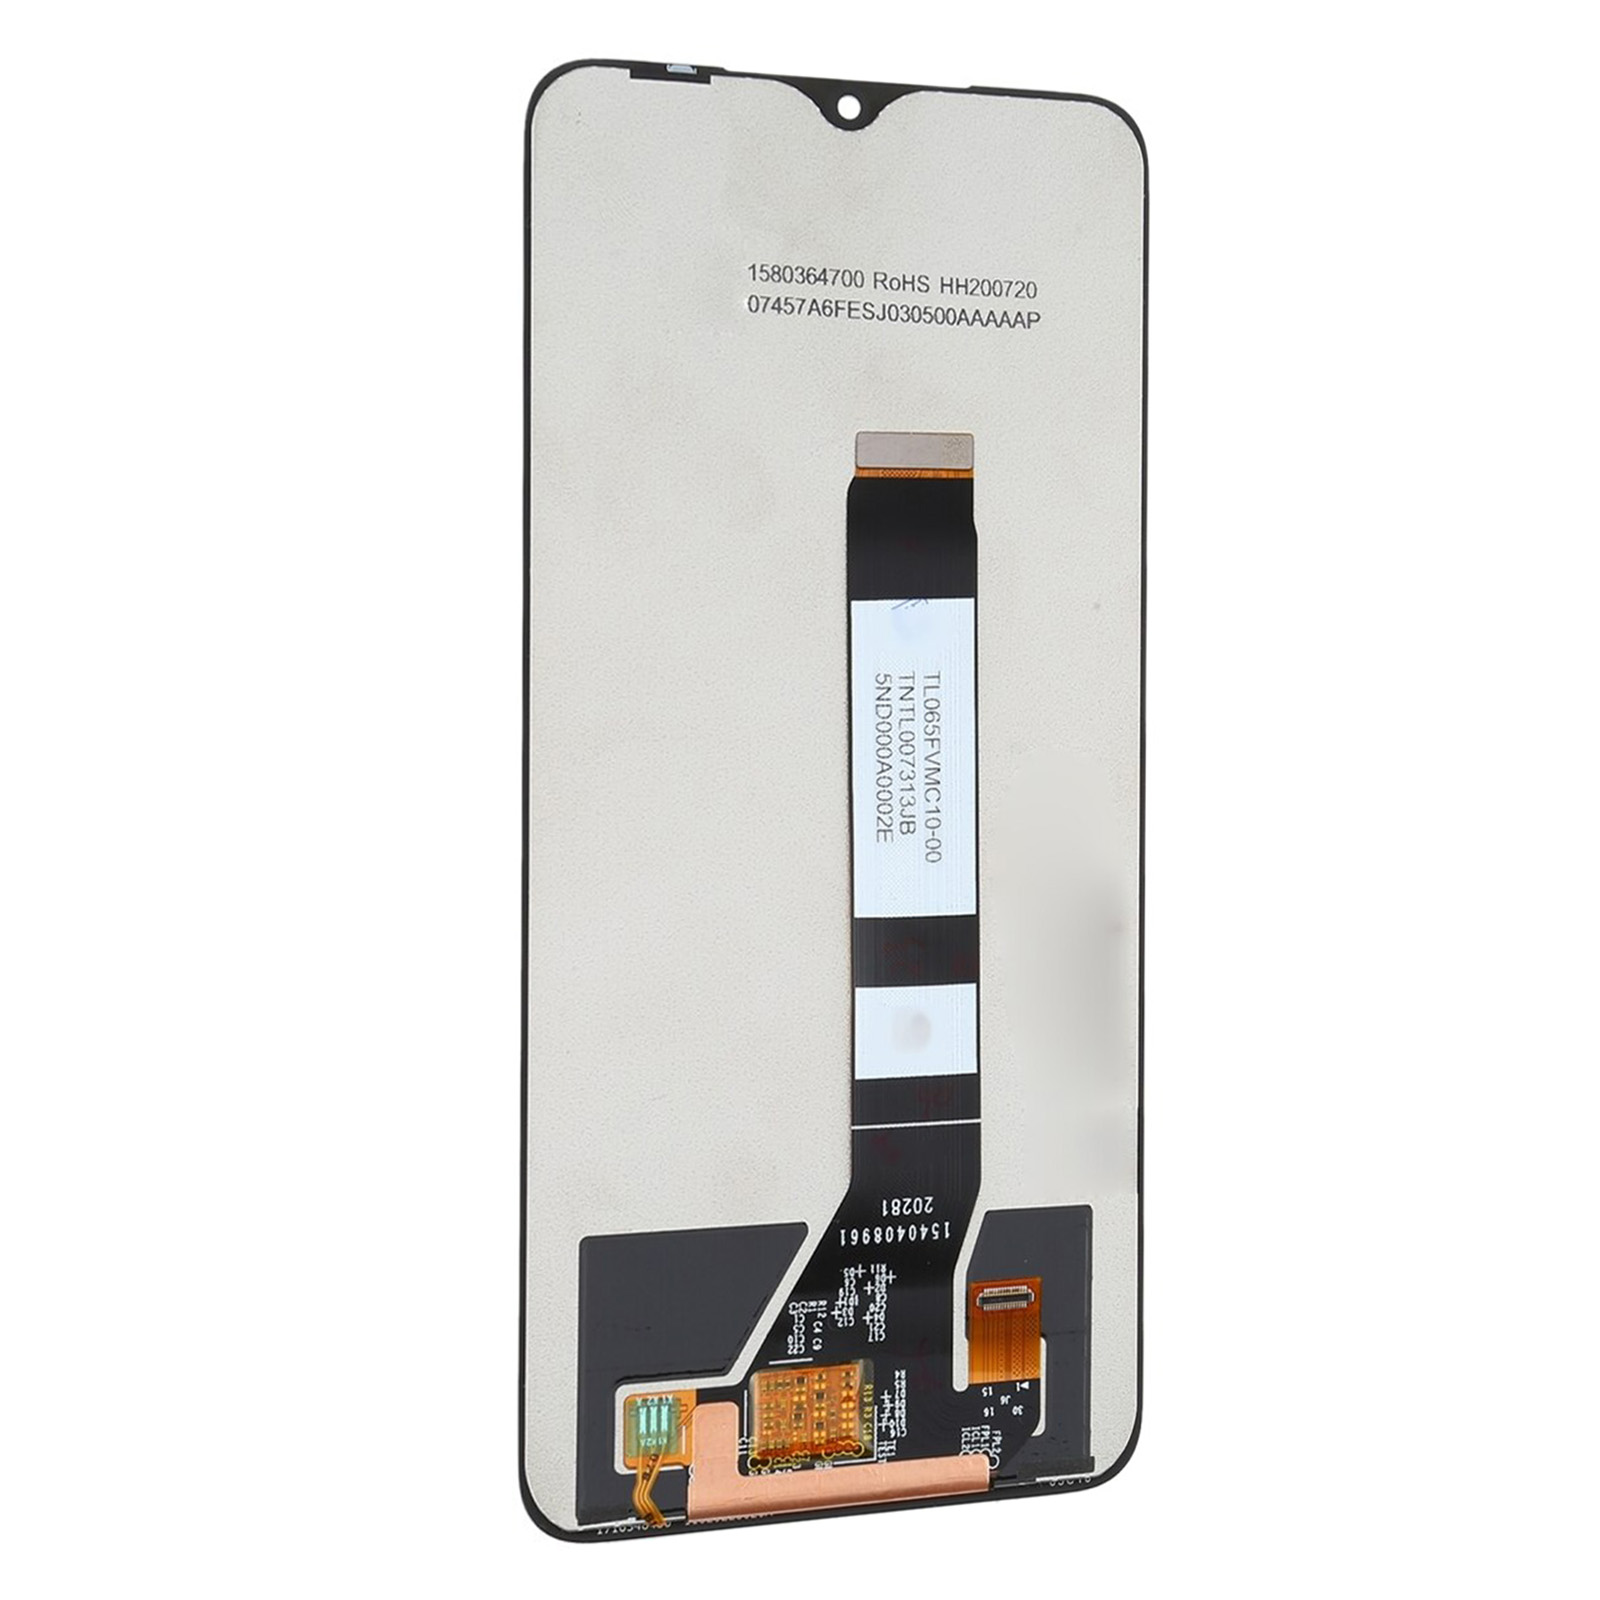 Ecran LCD vitre tactile Xiaomi Redmi 9T Noir